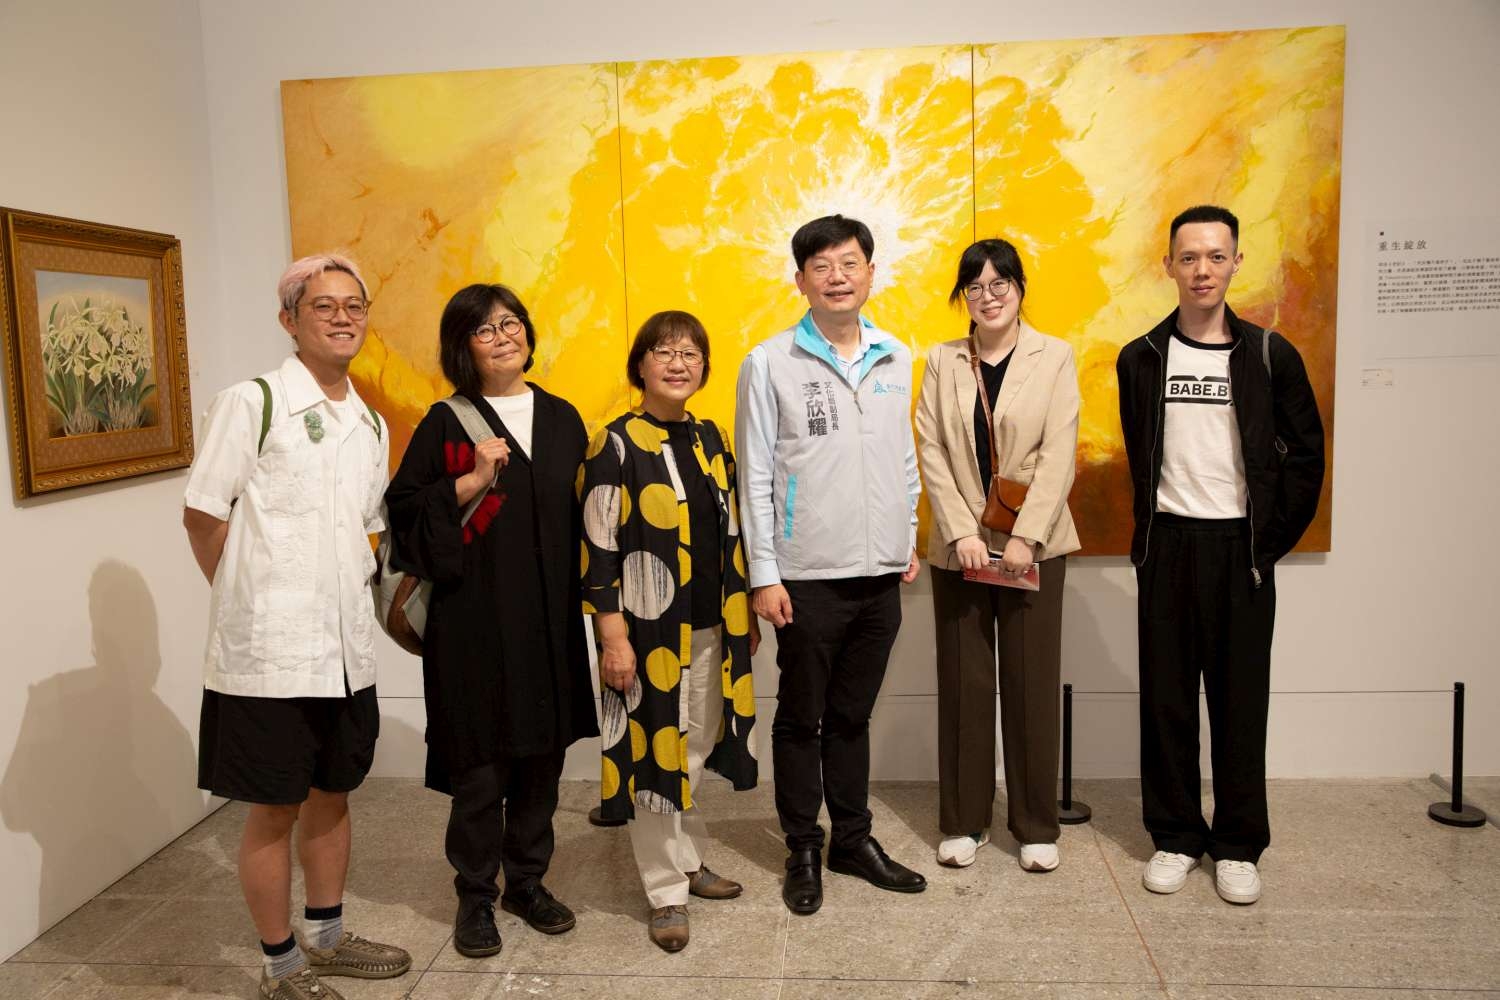 文化局副局長李欣耀於藝術家鄭瓊娟作品《氳》前，與在場藝術家、貴賓合影。